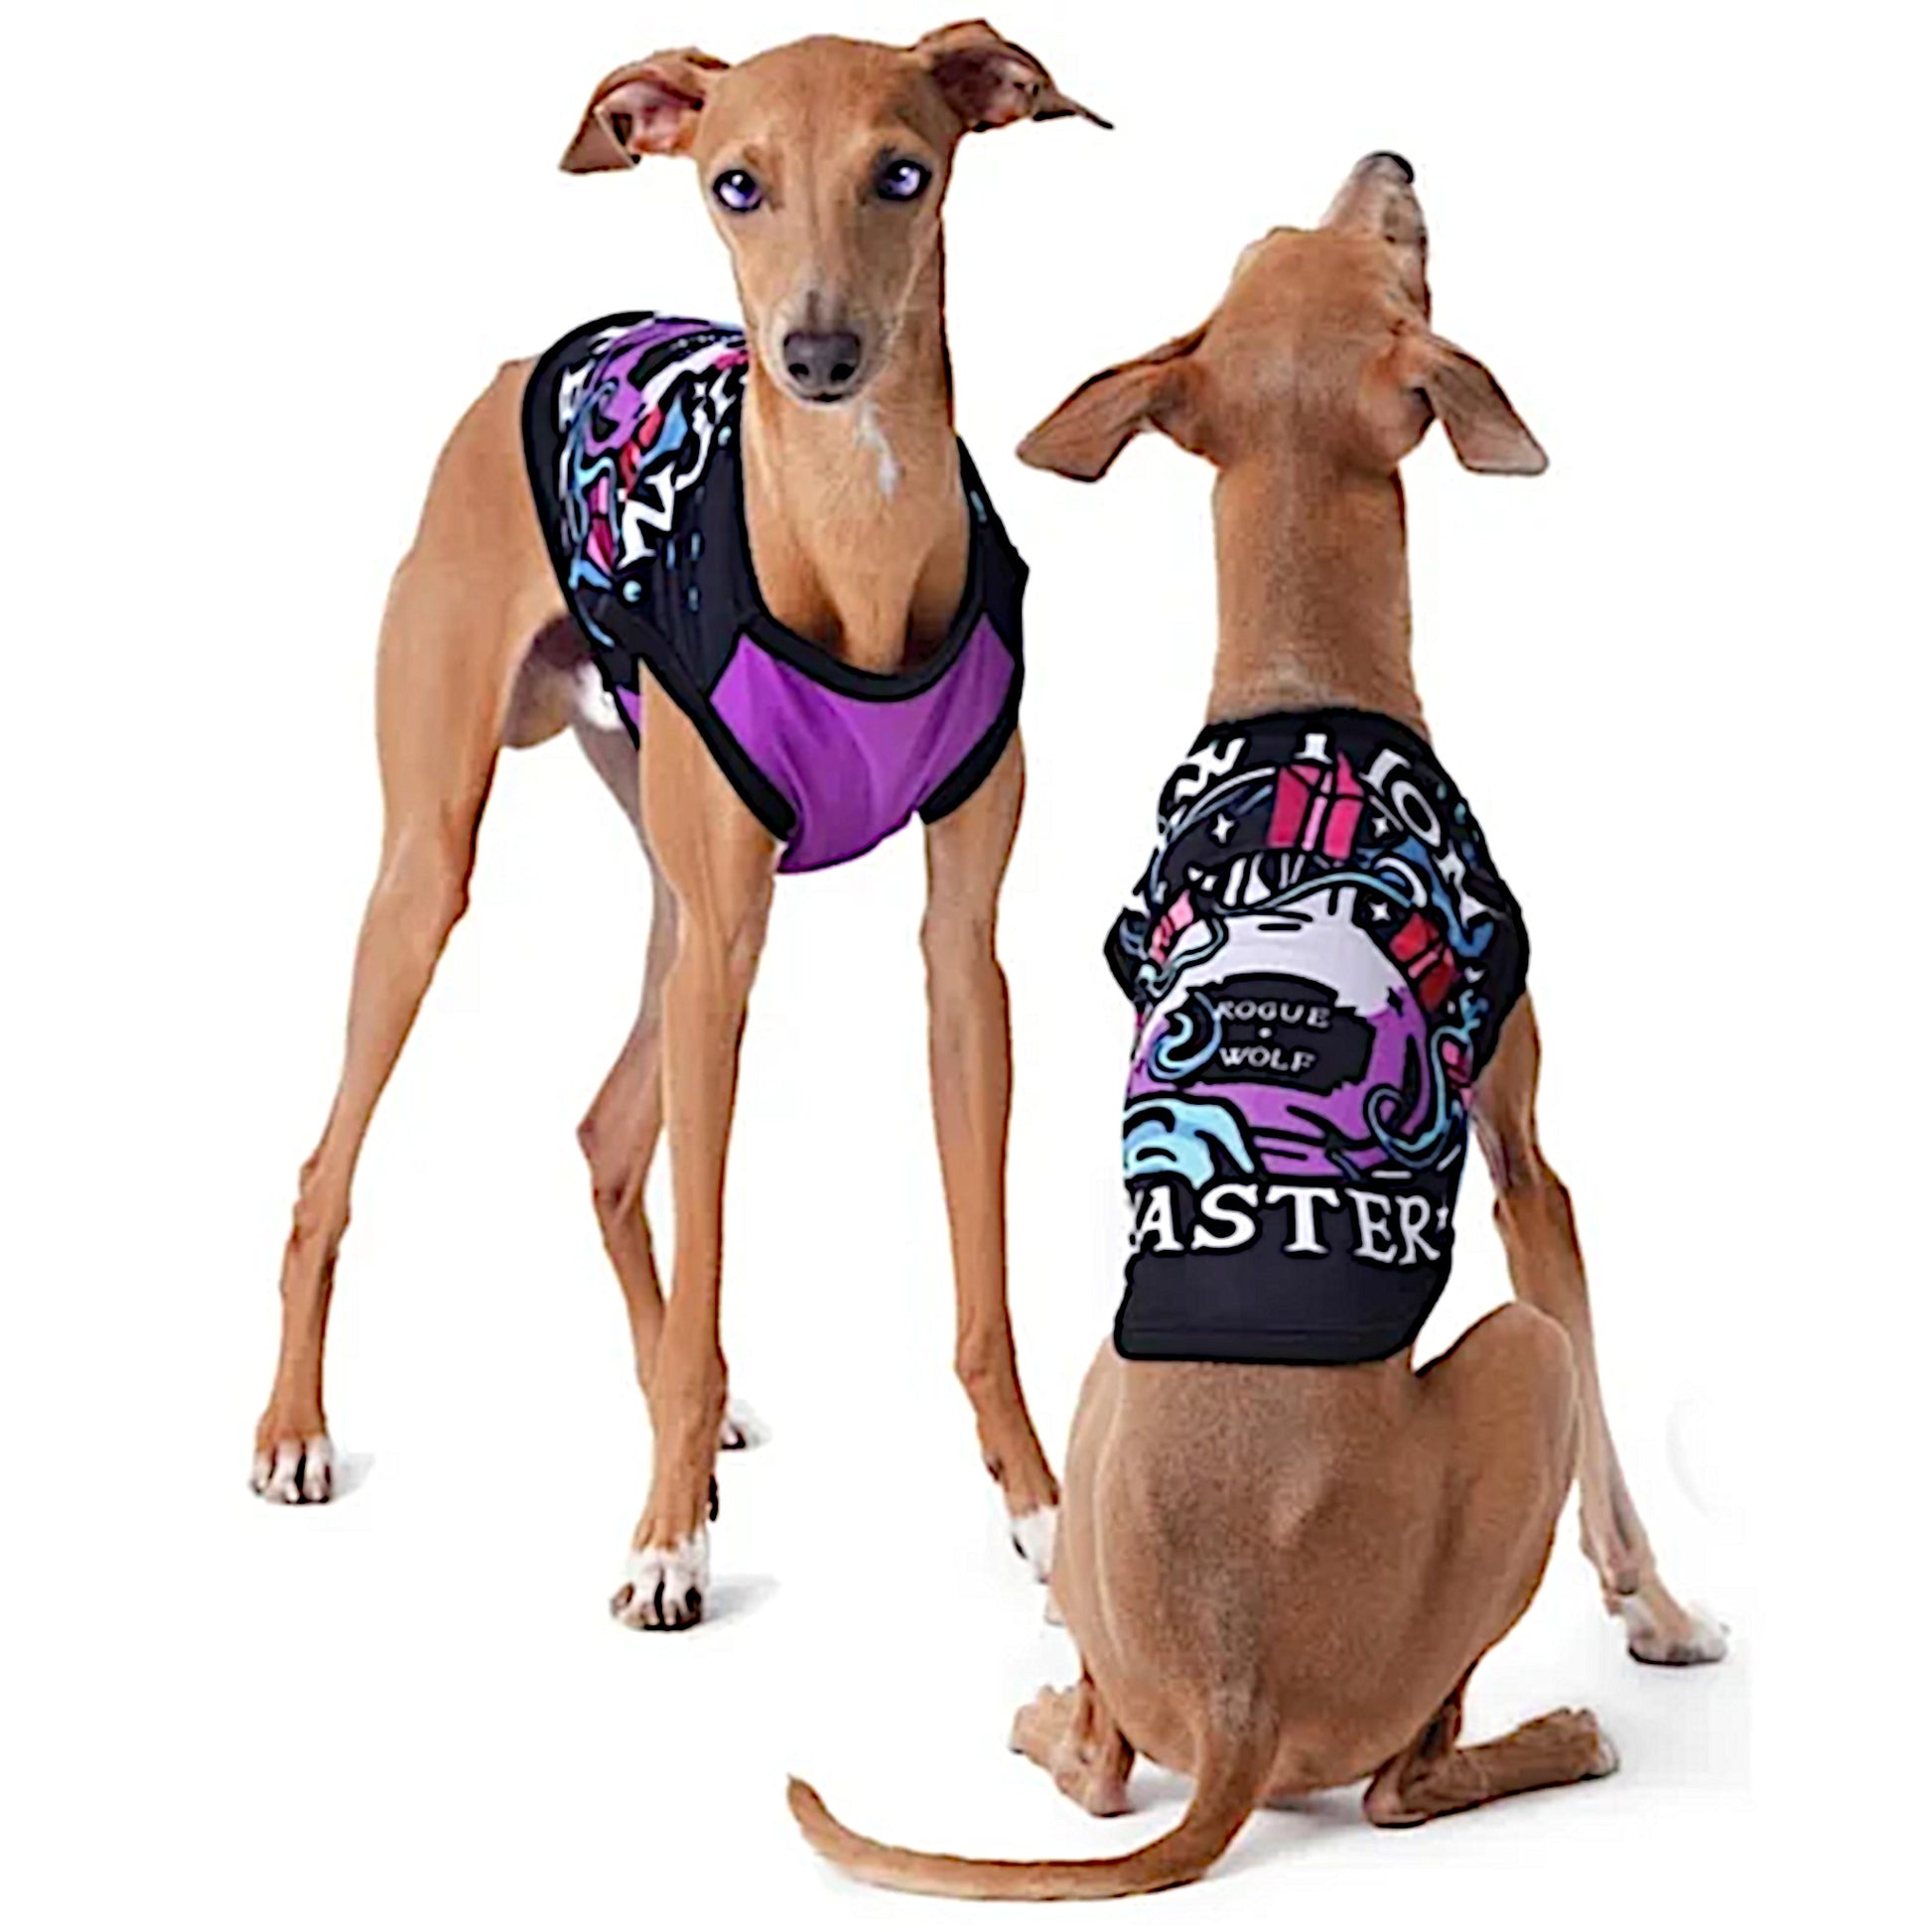 Pawfection Pet Vest | Pawtion Master Soft Comfy Magical Purple Black Pet Vest - A Gothic Universe - Pet Vests